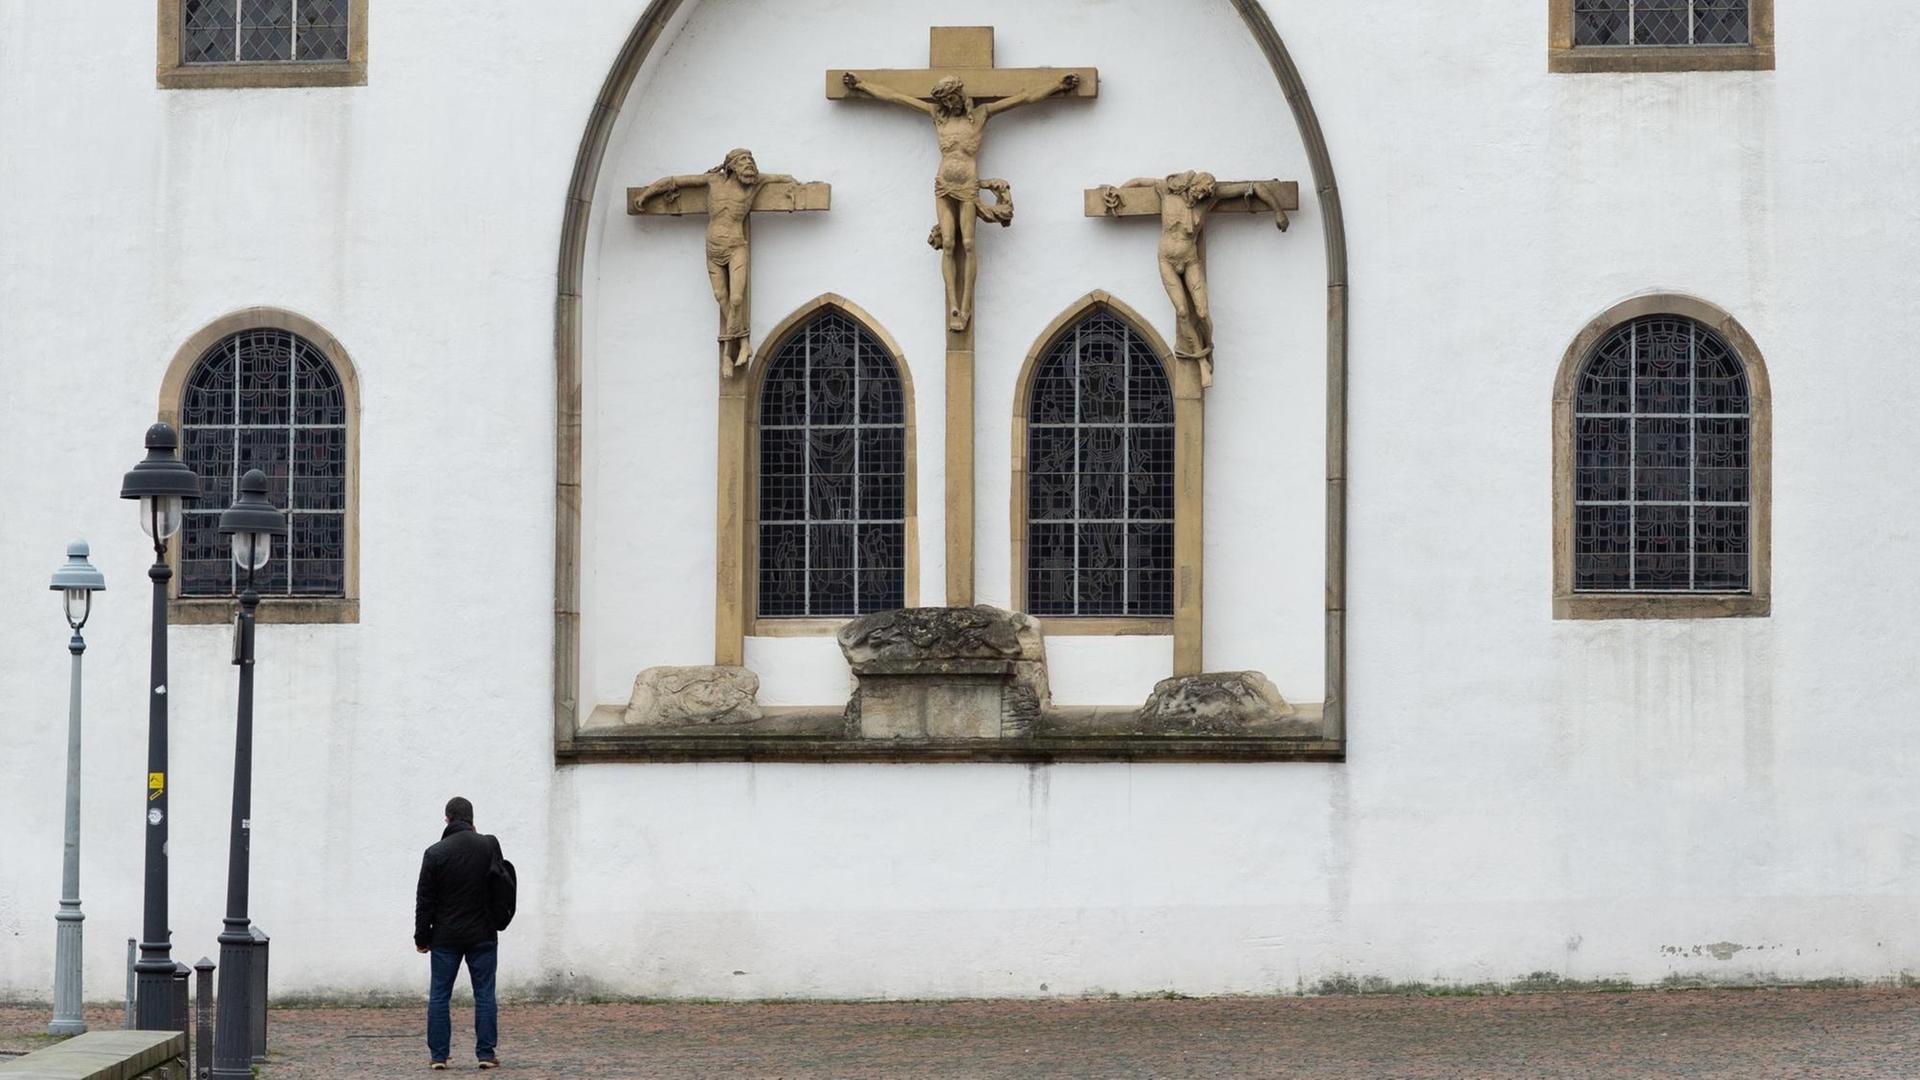 19.12.2018, Niedersachsen, Osnabrück: Ein Mann steht vor der Kleinen Kirche am Osnabrücker Dom und blickt auf eine Fassade mit Kreuzen.